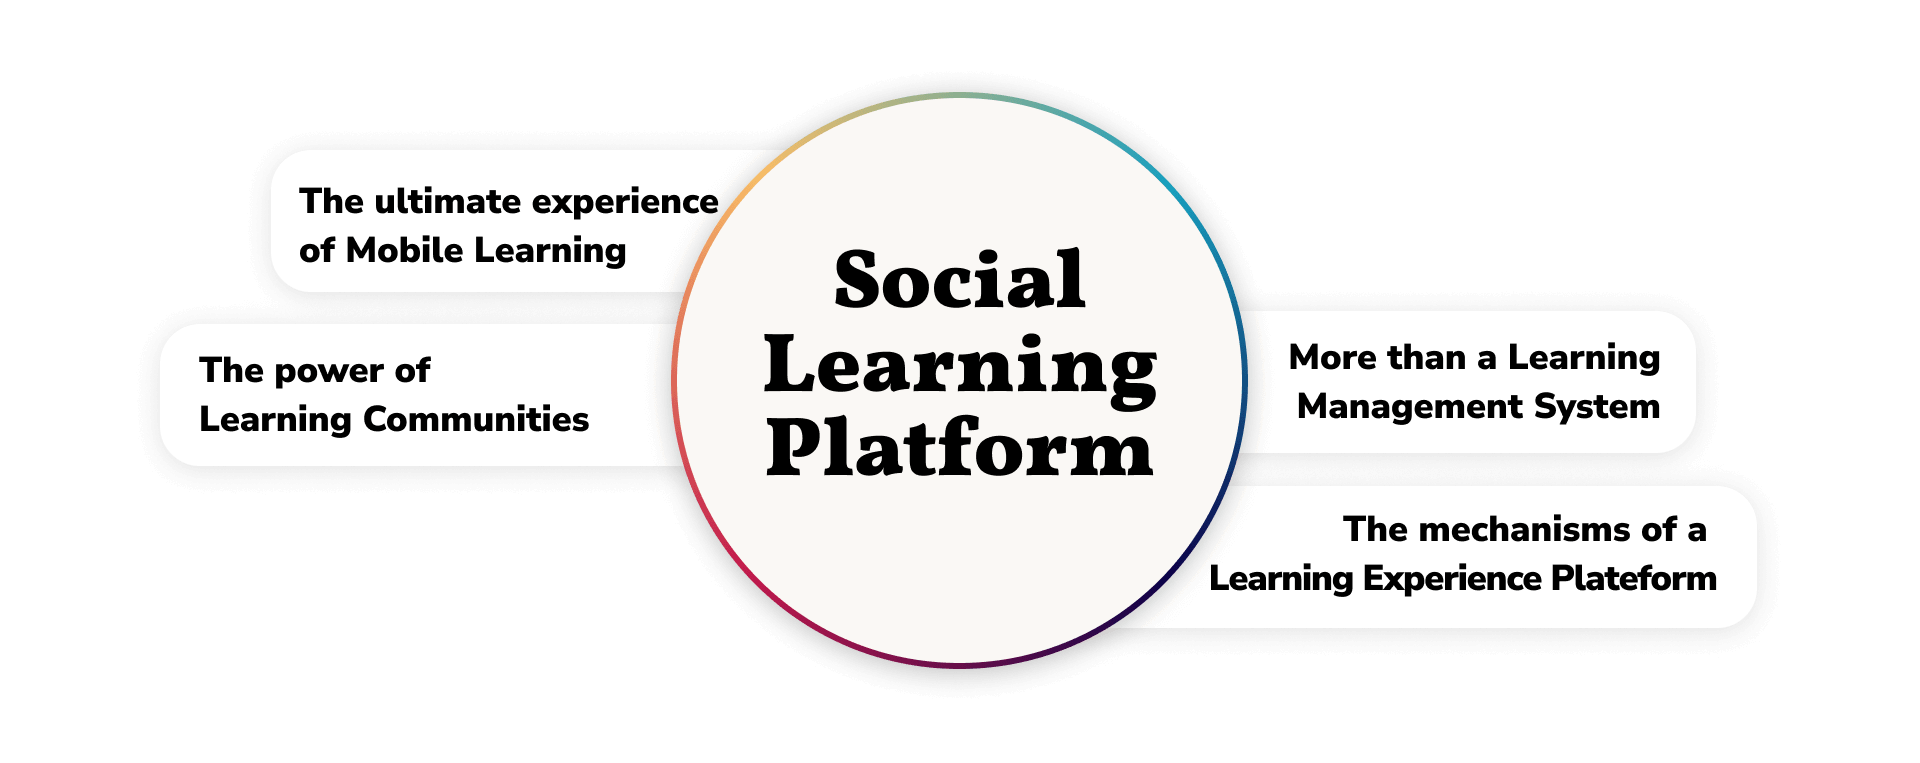 Social Learning Platform anglais-1